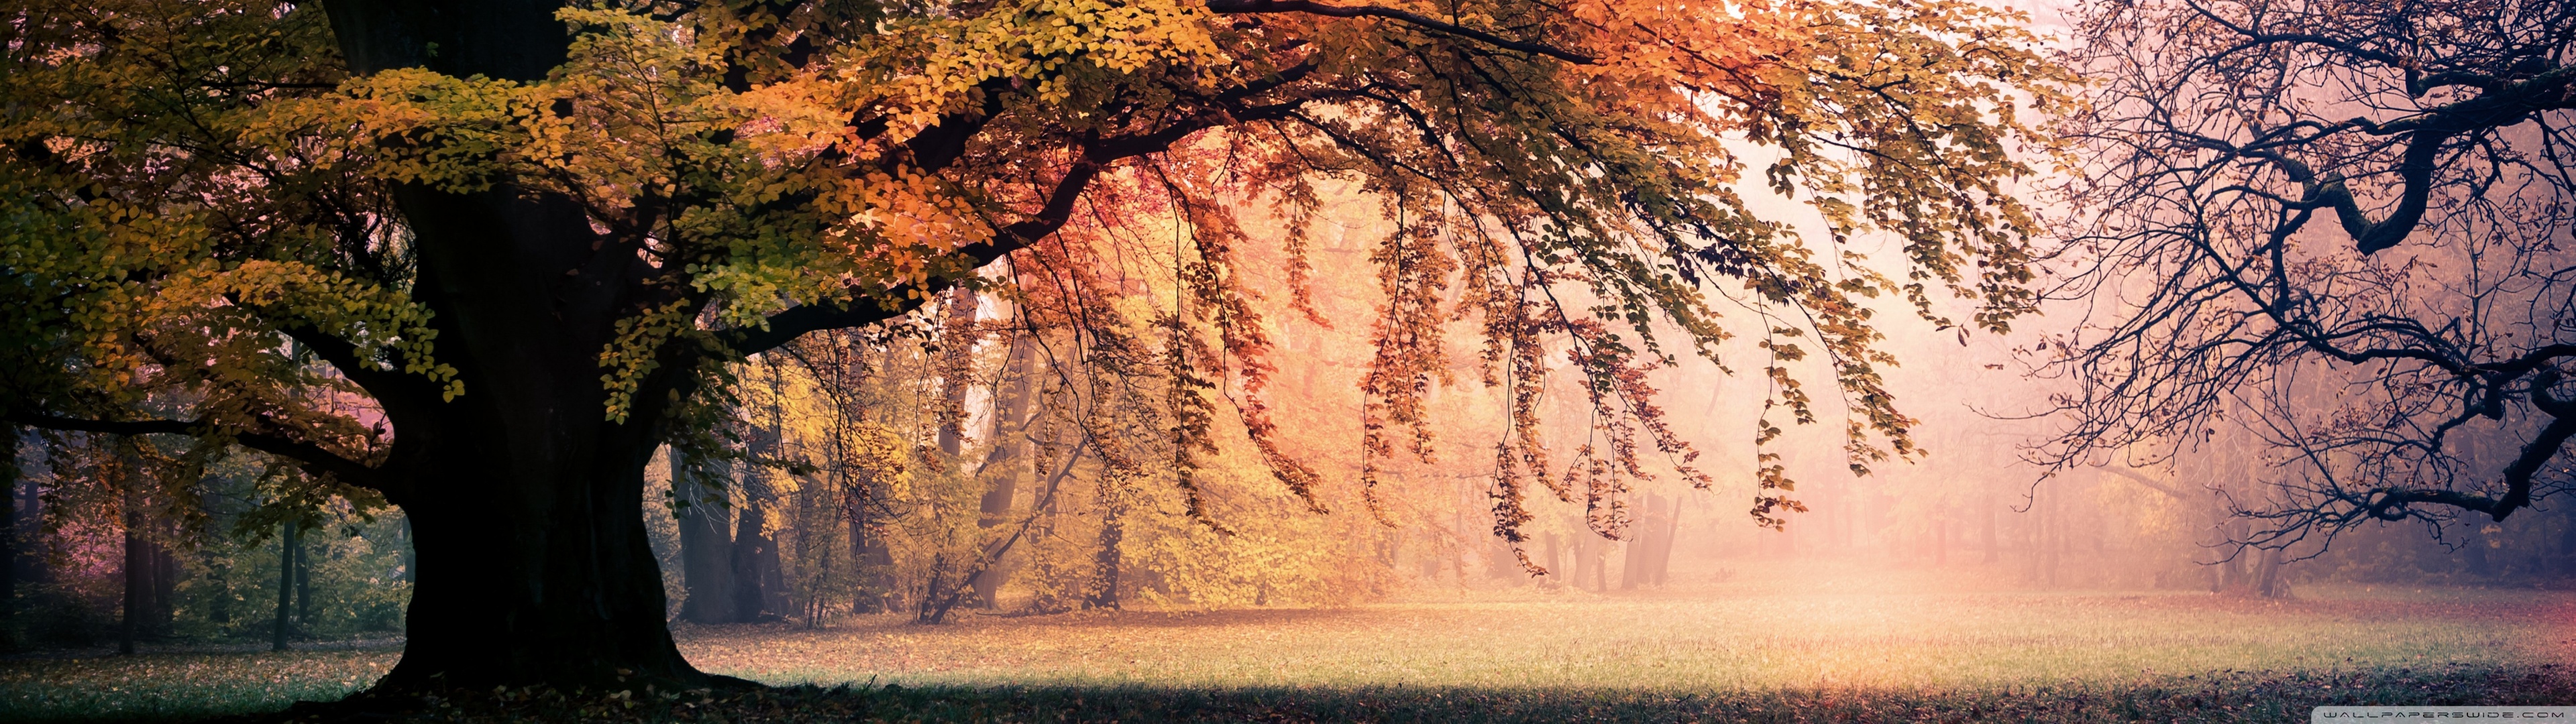 Hình nền mùa thu 3840x1080 sẽ đưa bạn đến những cánh rừng đầy màu sắc của mùa thu. Với lá cây vàng rực, cảnh quan trở nên đẹp hơn bao giờ hết. Tận hưởng không khí lãng mạn của mùa thu với hình nền này.